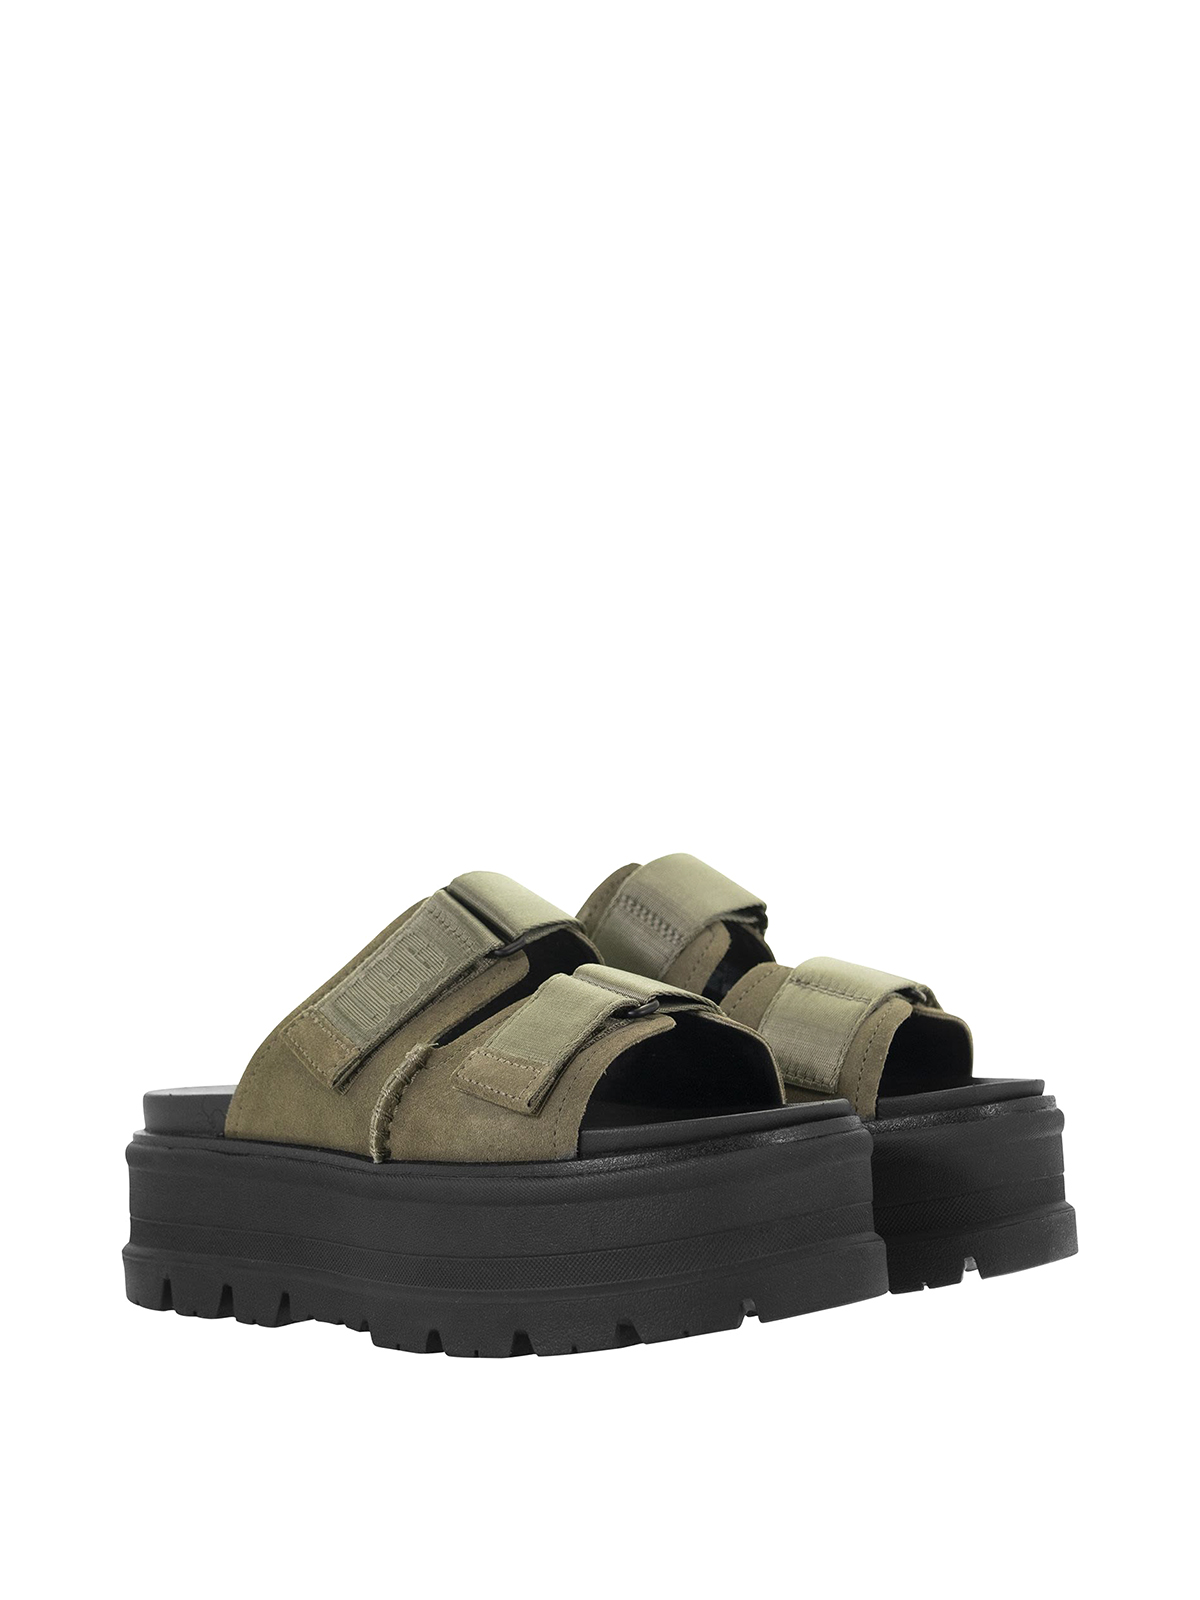 Sandals Ugg - Clem sandals - 1118771WOLV | Shop online at iKRIX